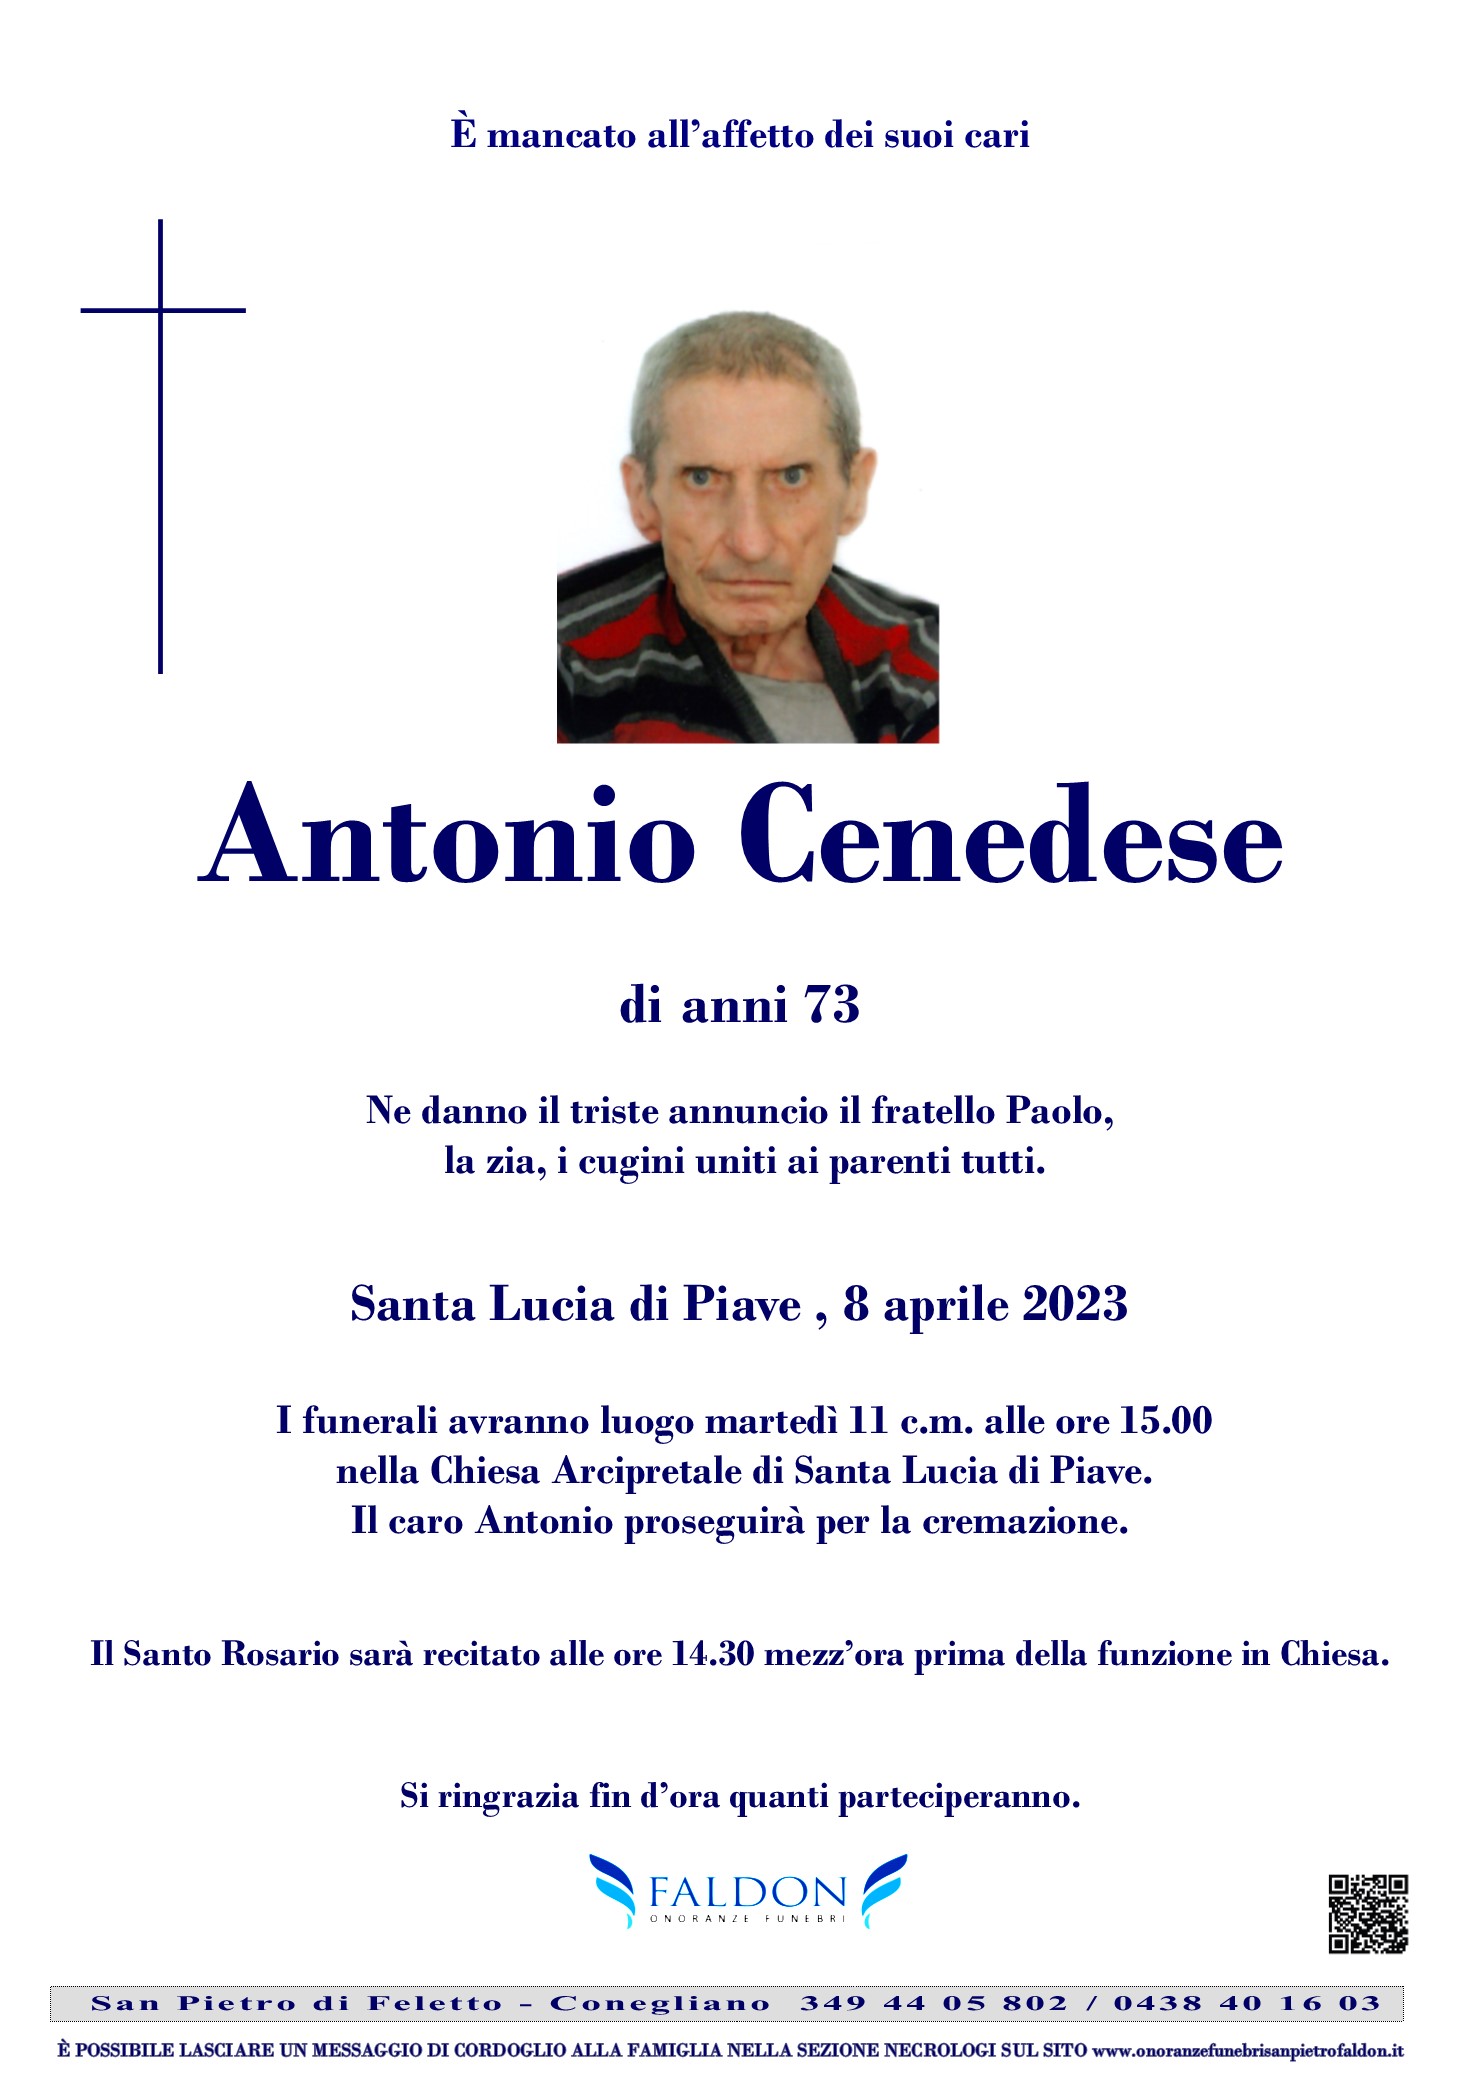 Antonio Cenedese